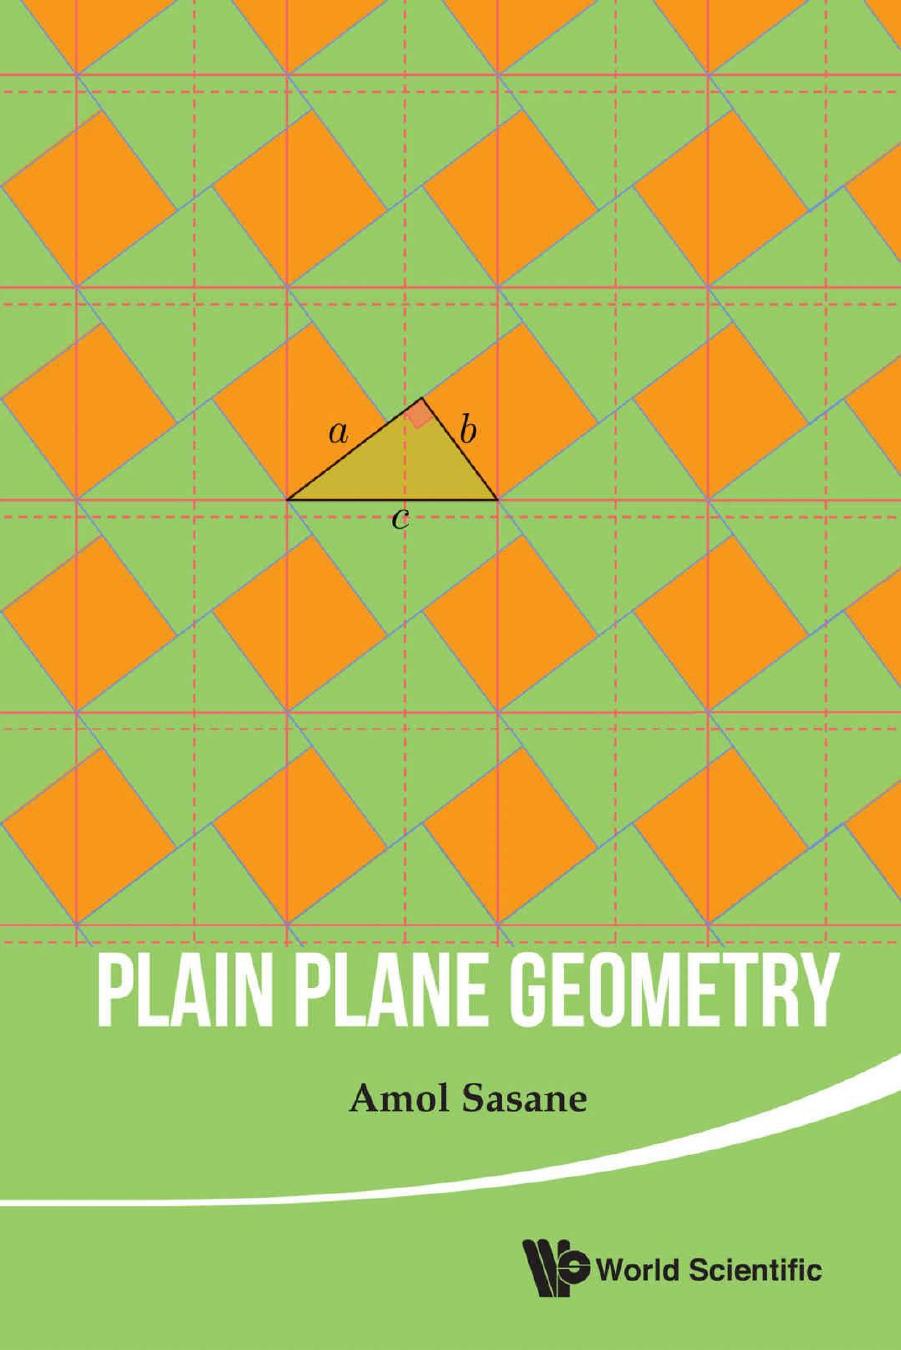 Plain Plane Geometry by Amol Sasane